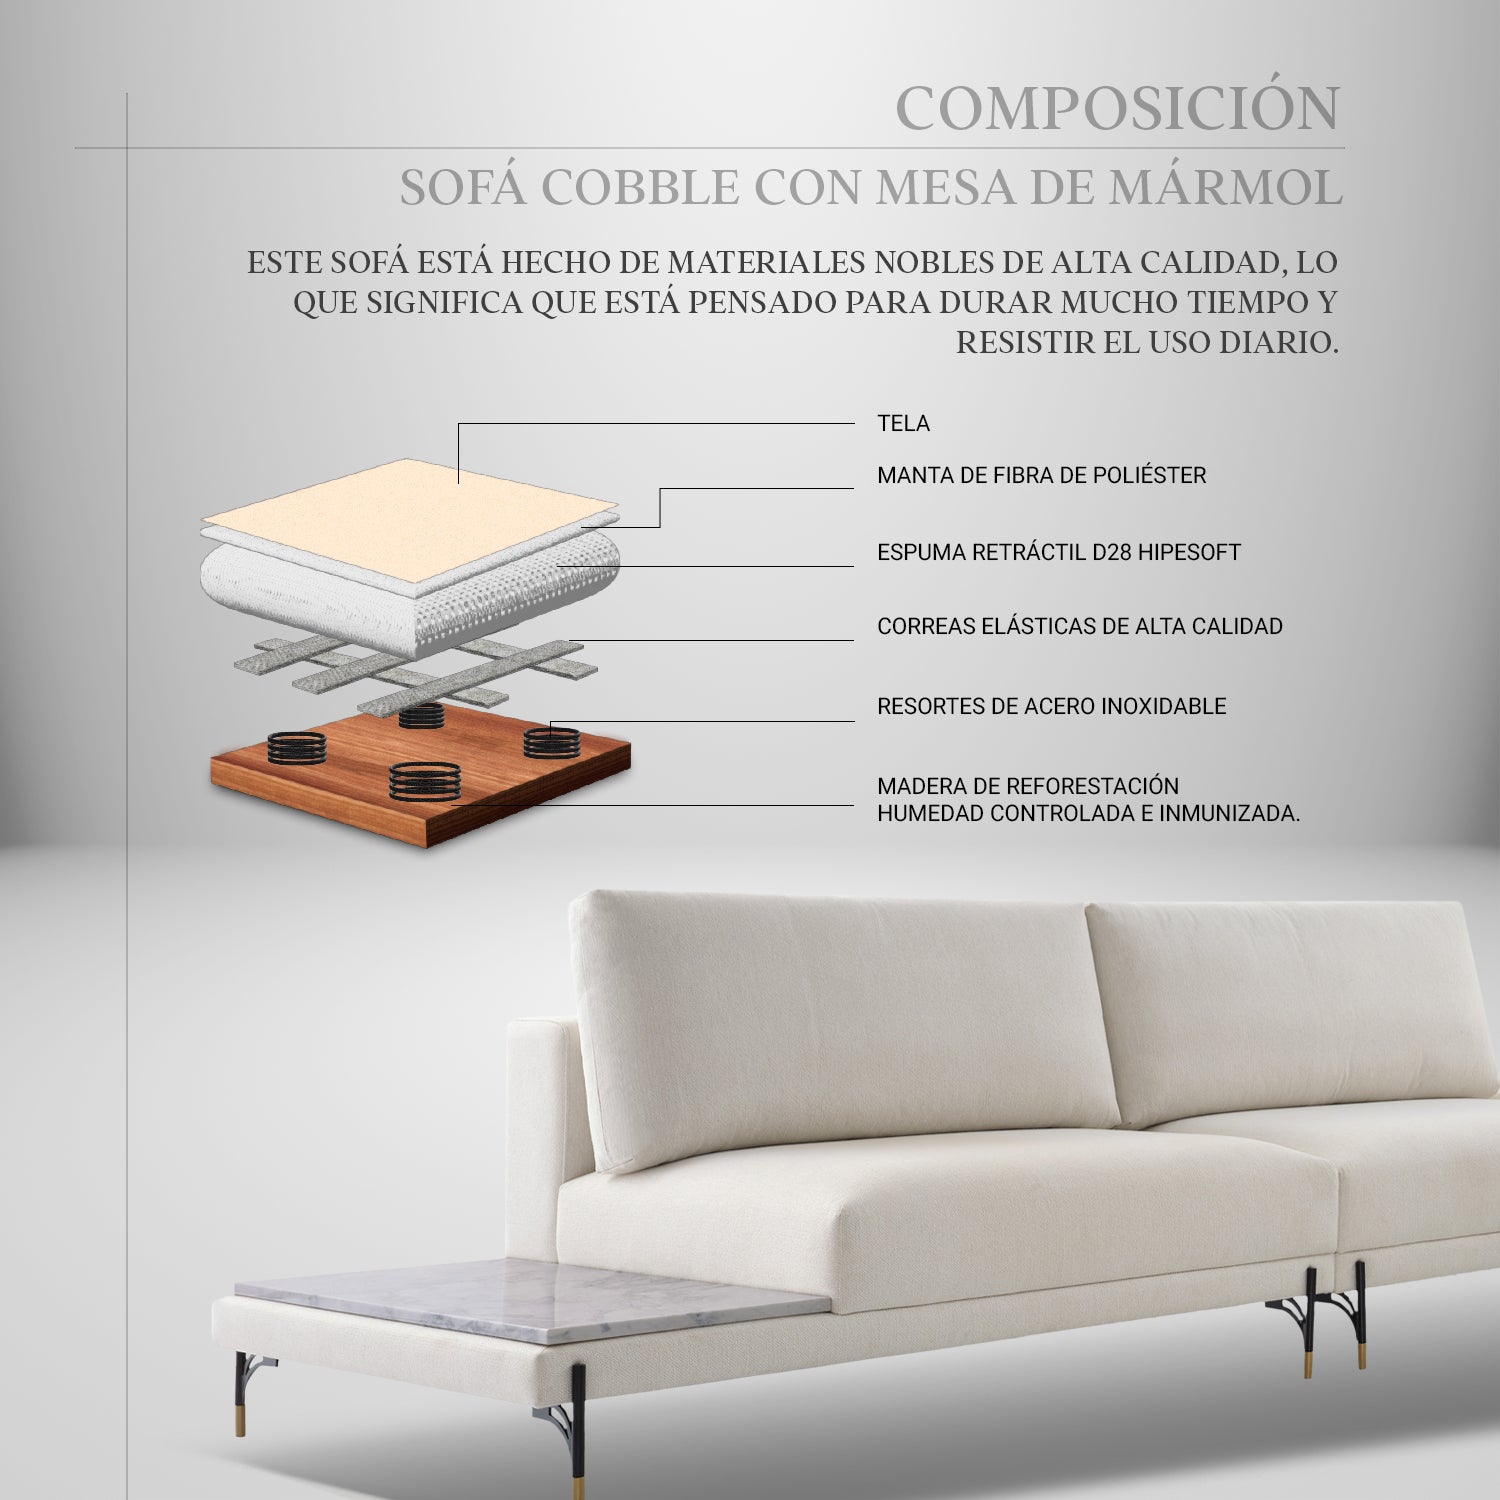 sofá cobble con mesa de mármol